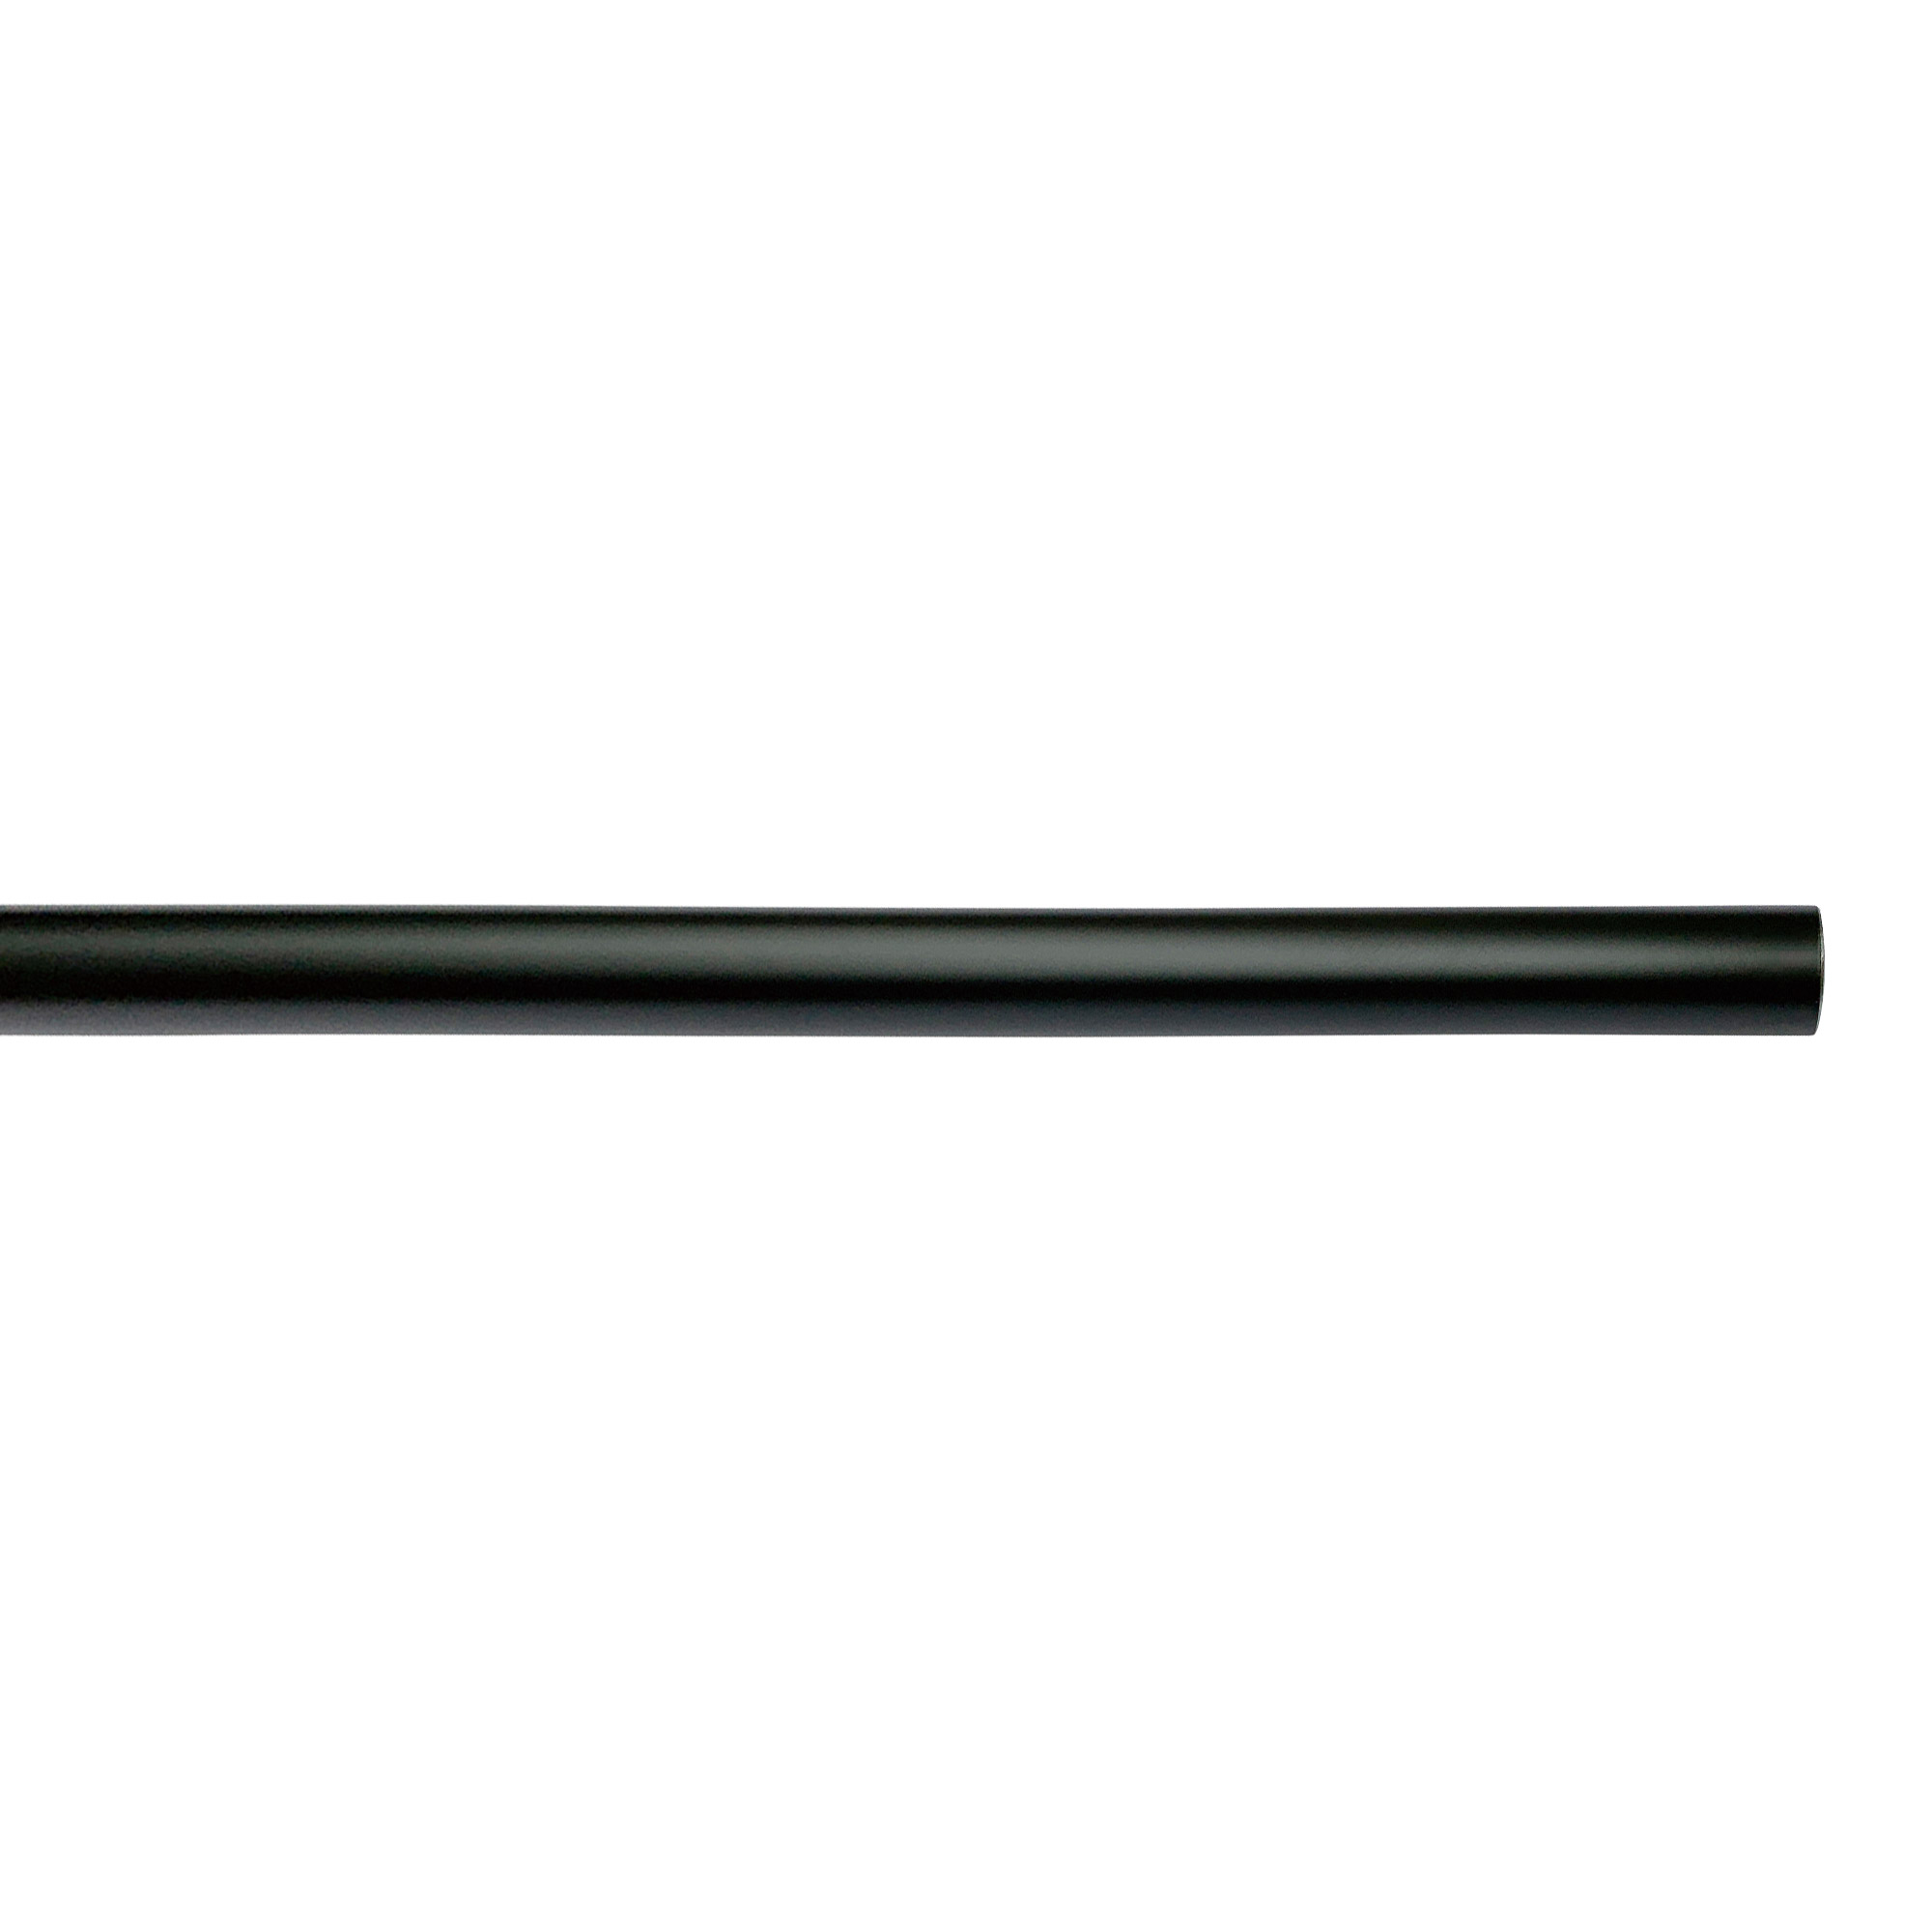 アイアンハンガーパイプ コの字型-天井吊タイプ H300 ブラック PS-HB008-53-G141 水平パイプは3サイズから選択可能です